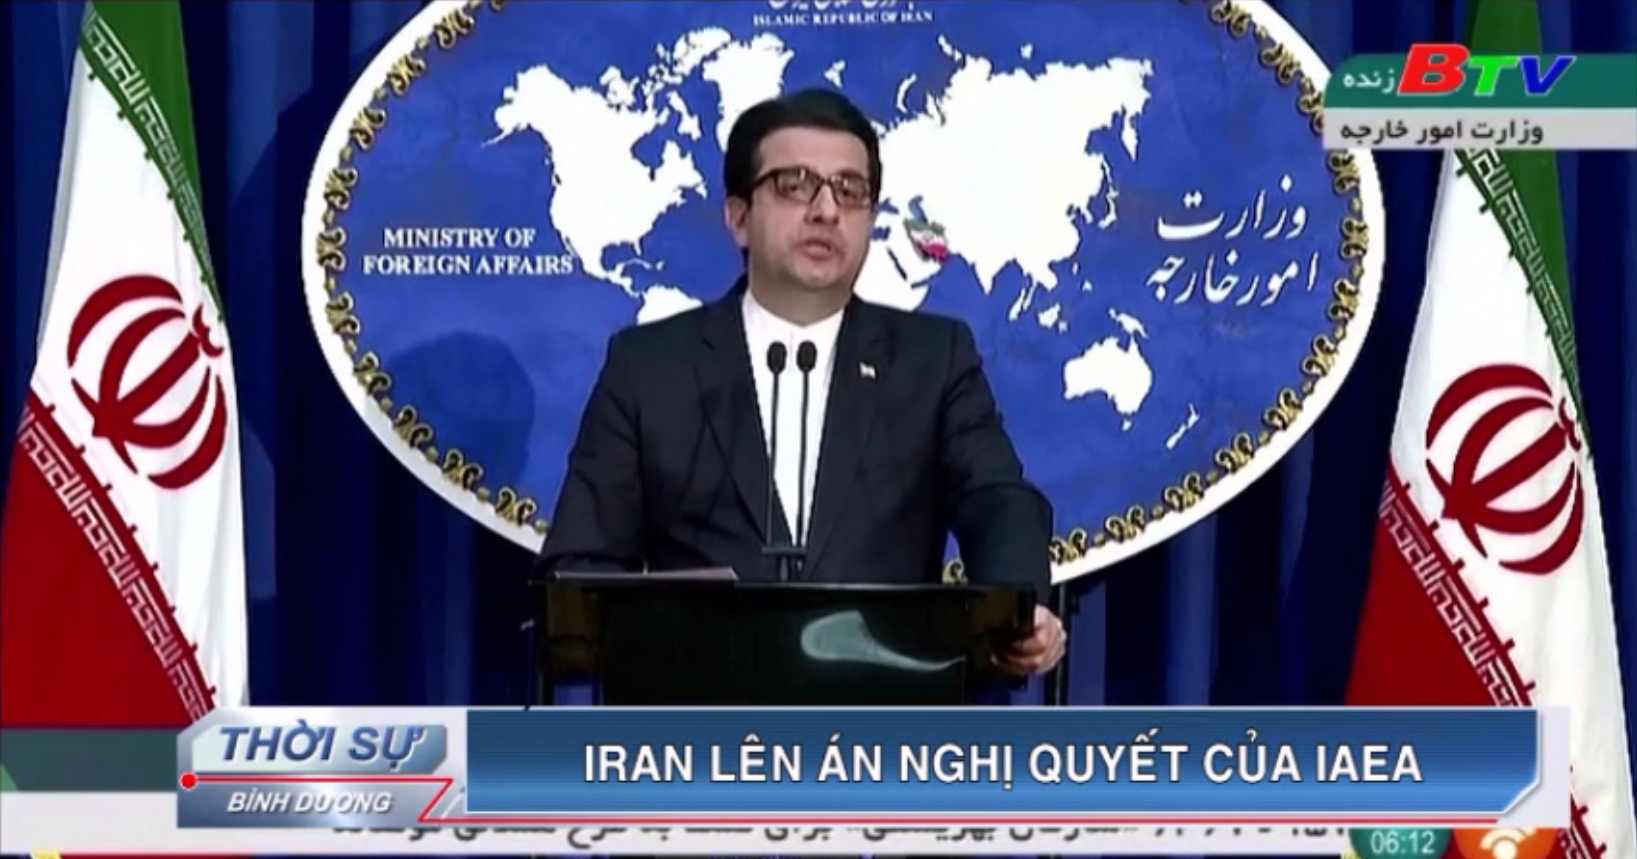 Iran lên án nghị quyết của IAEA